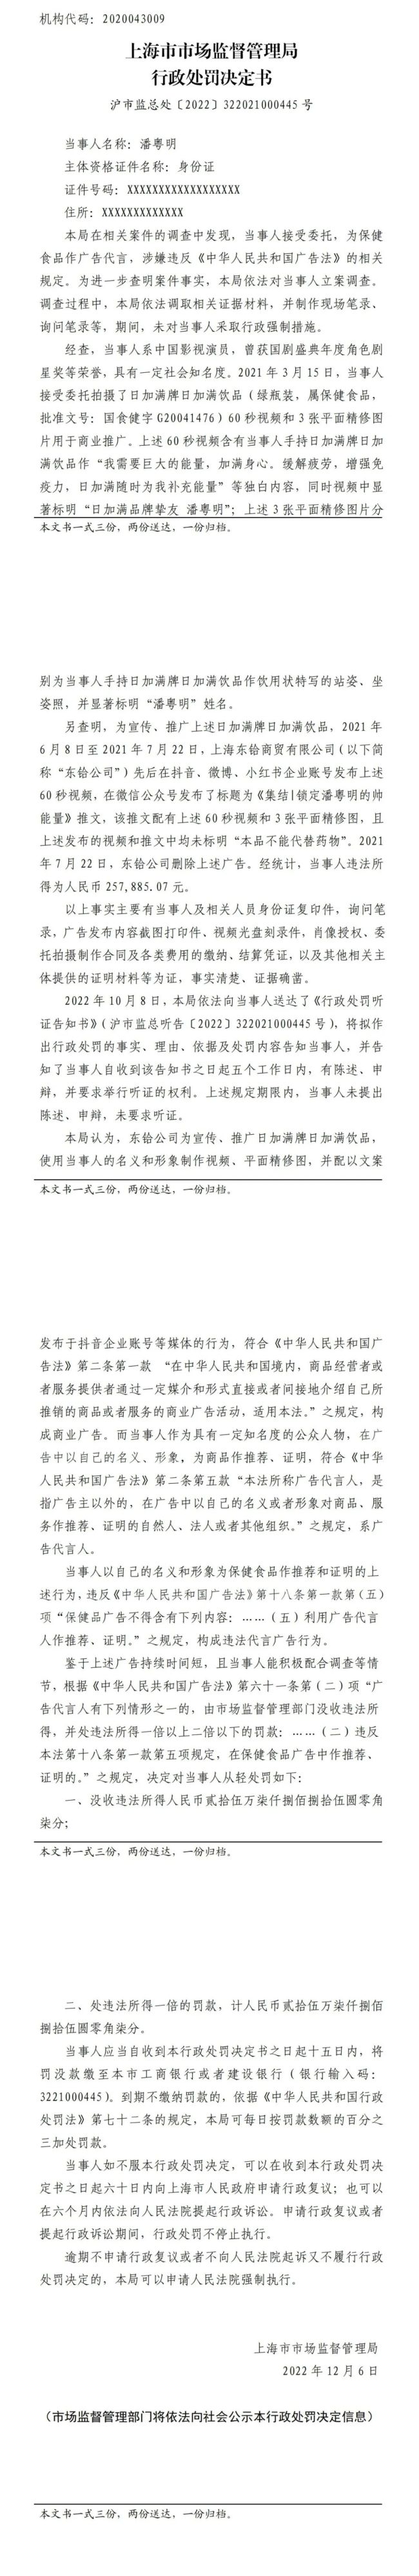 潘粤明代言违法保健品广告被罚25.8万元